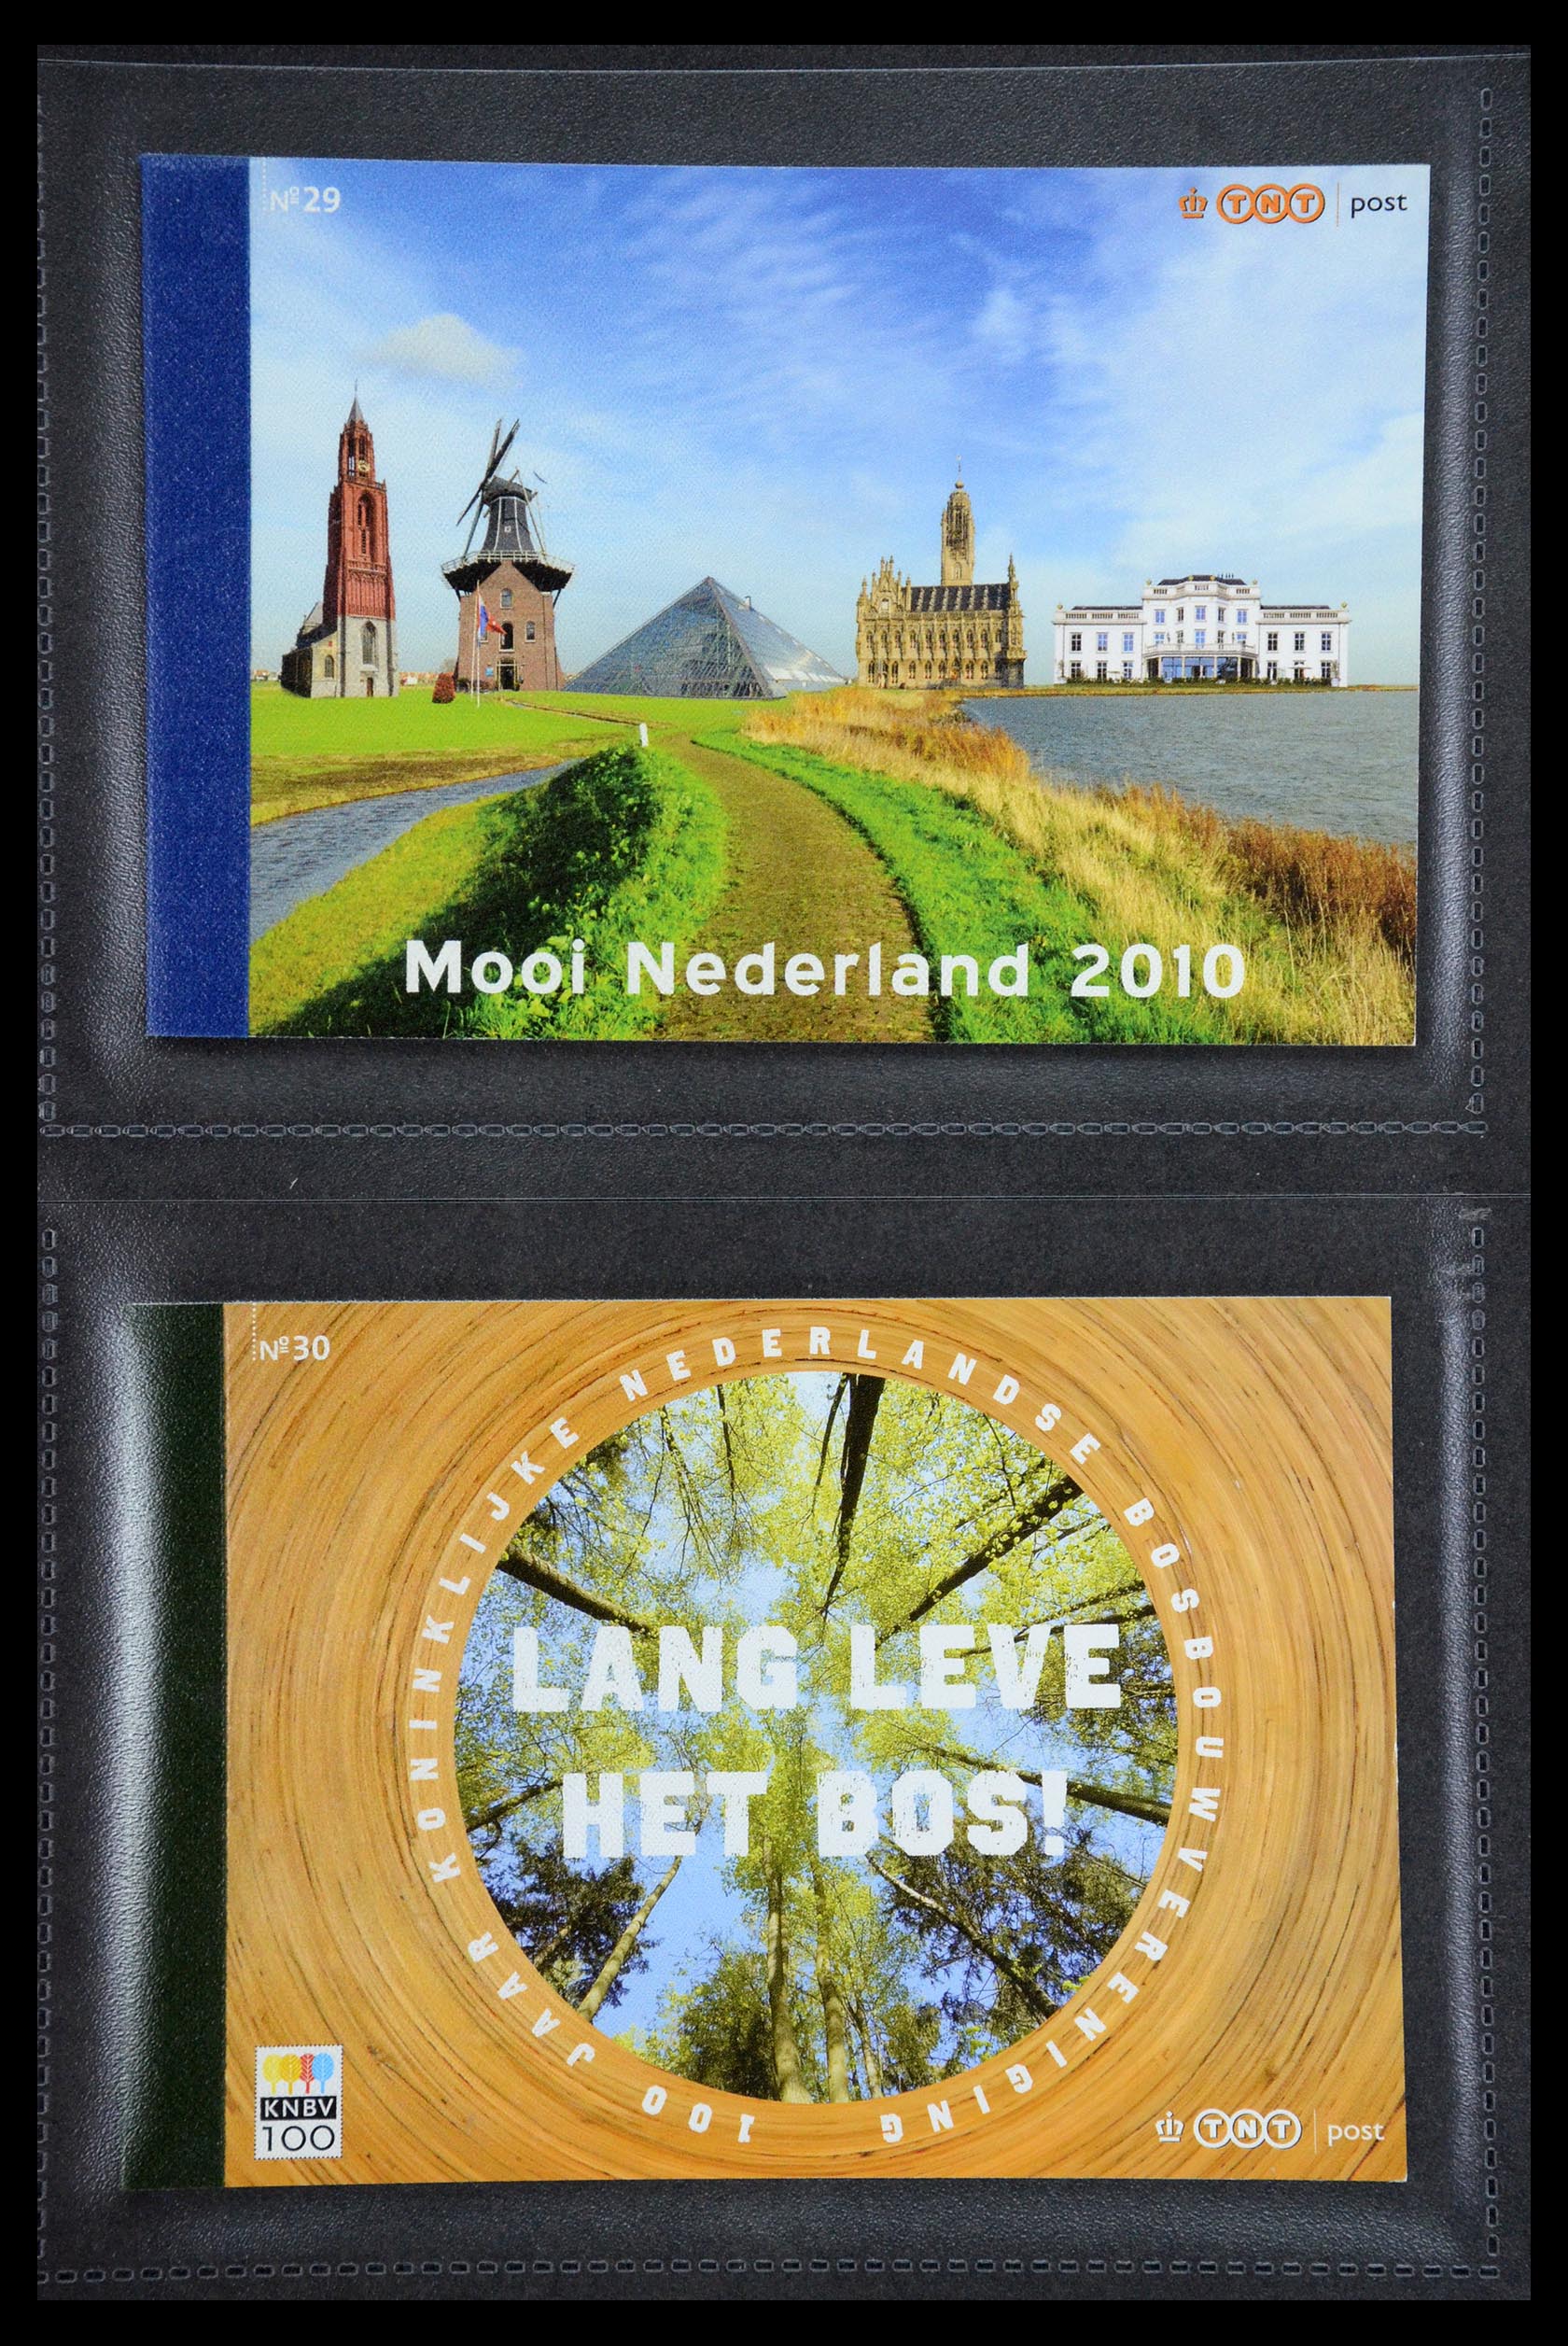 35945 015 - Stamp Collection 35945 Netherlands prestige booklets 2013-2019.